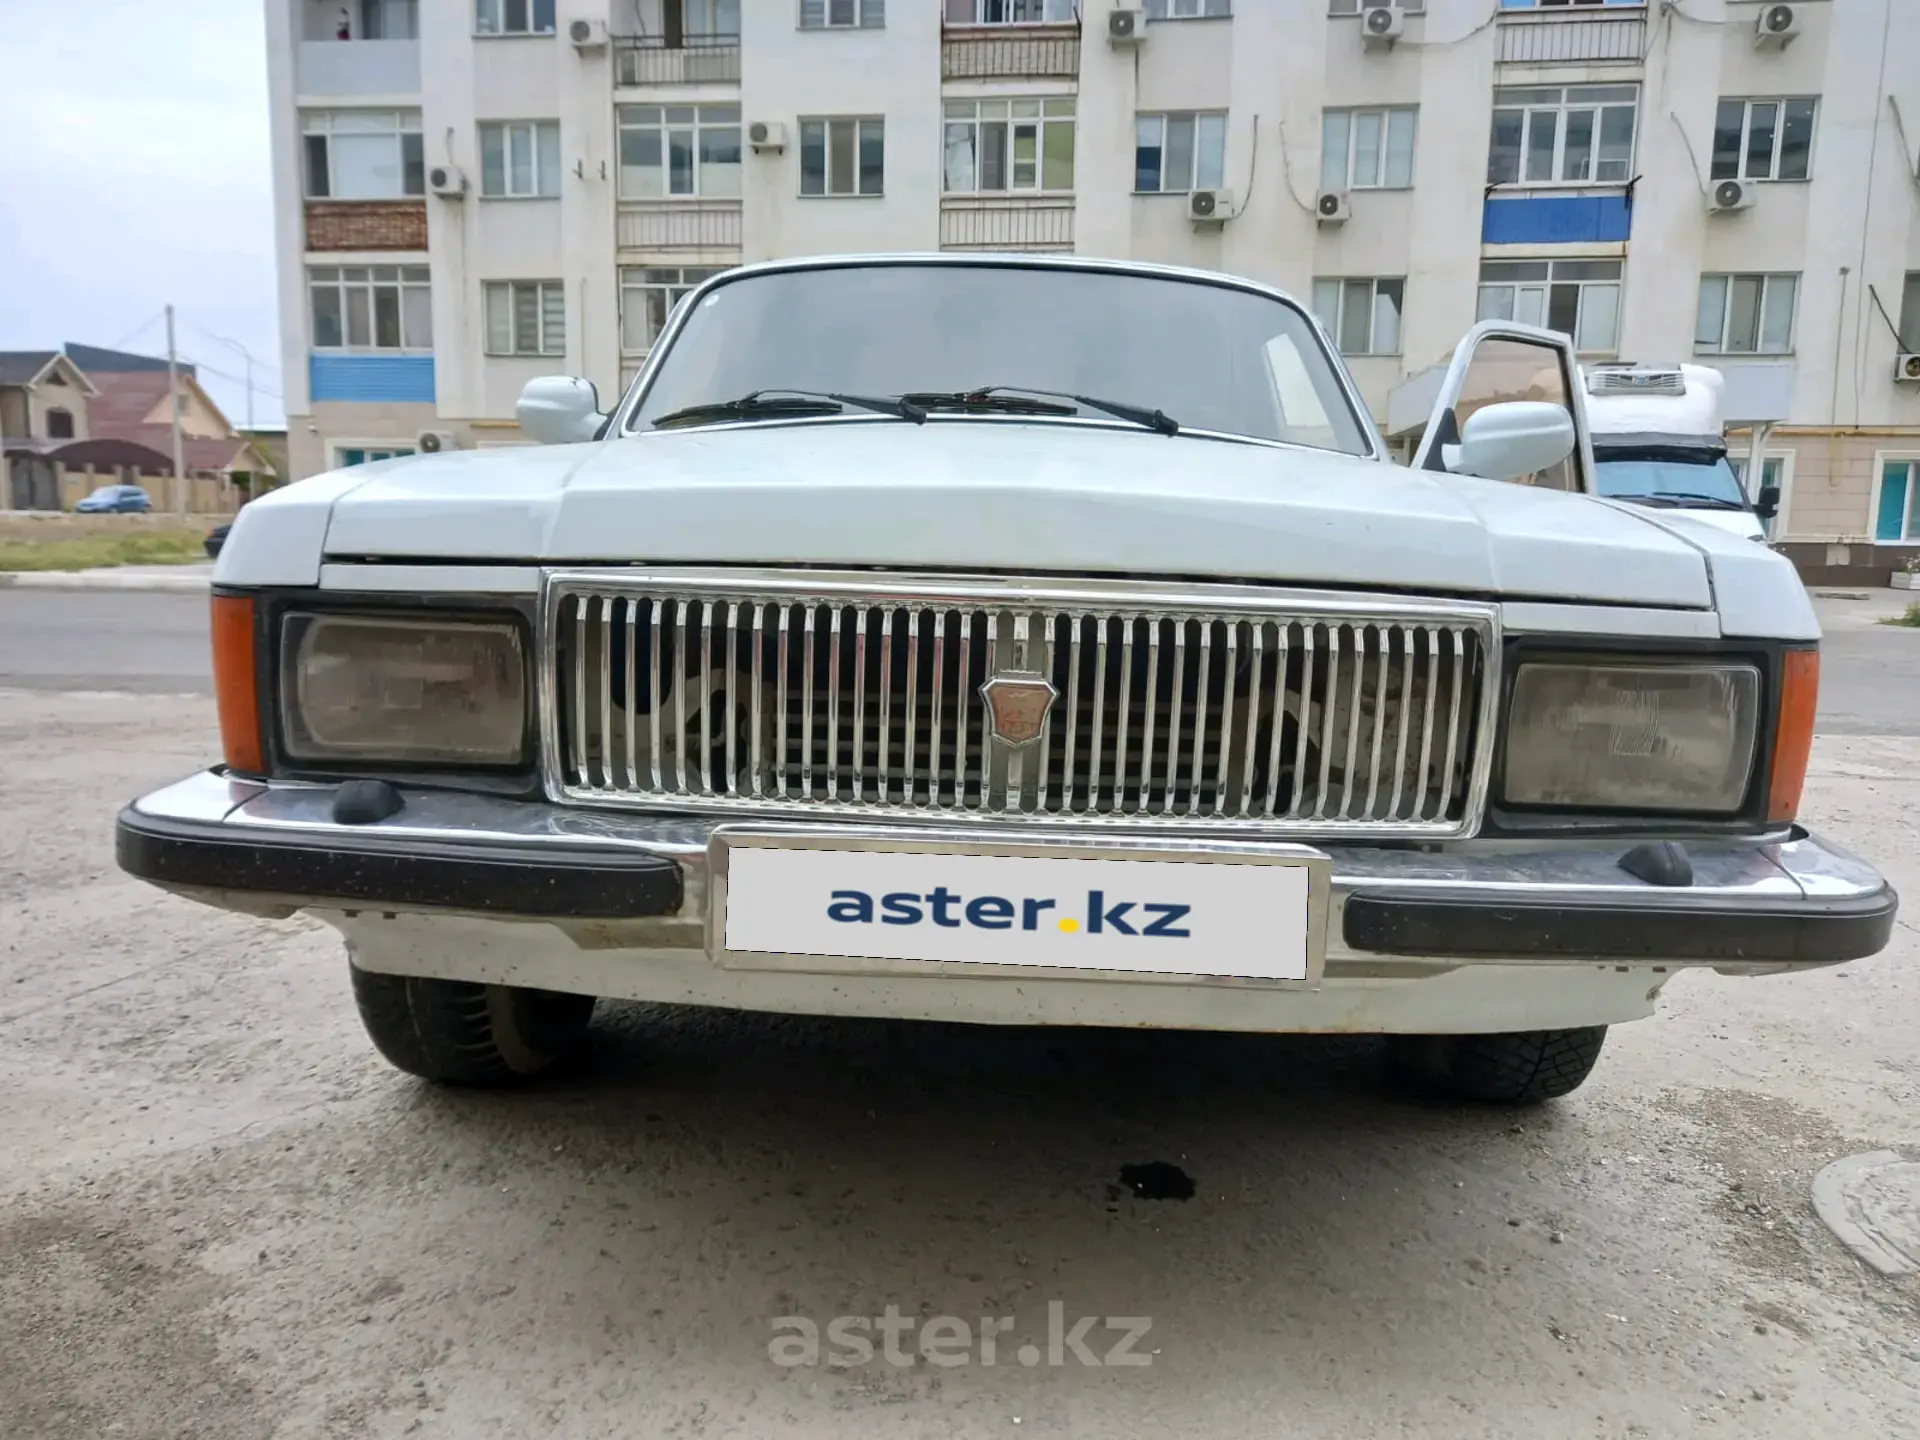 Объявления о продаже ГАЗ 31029 Волга в Украине